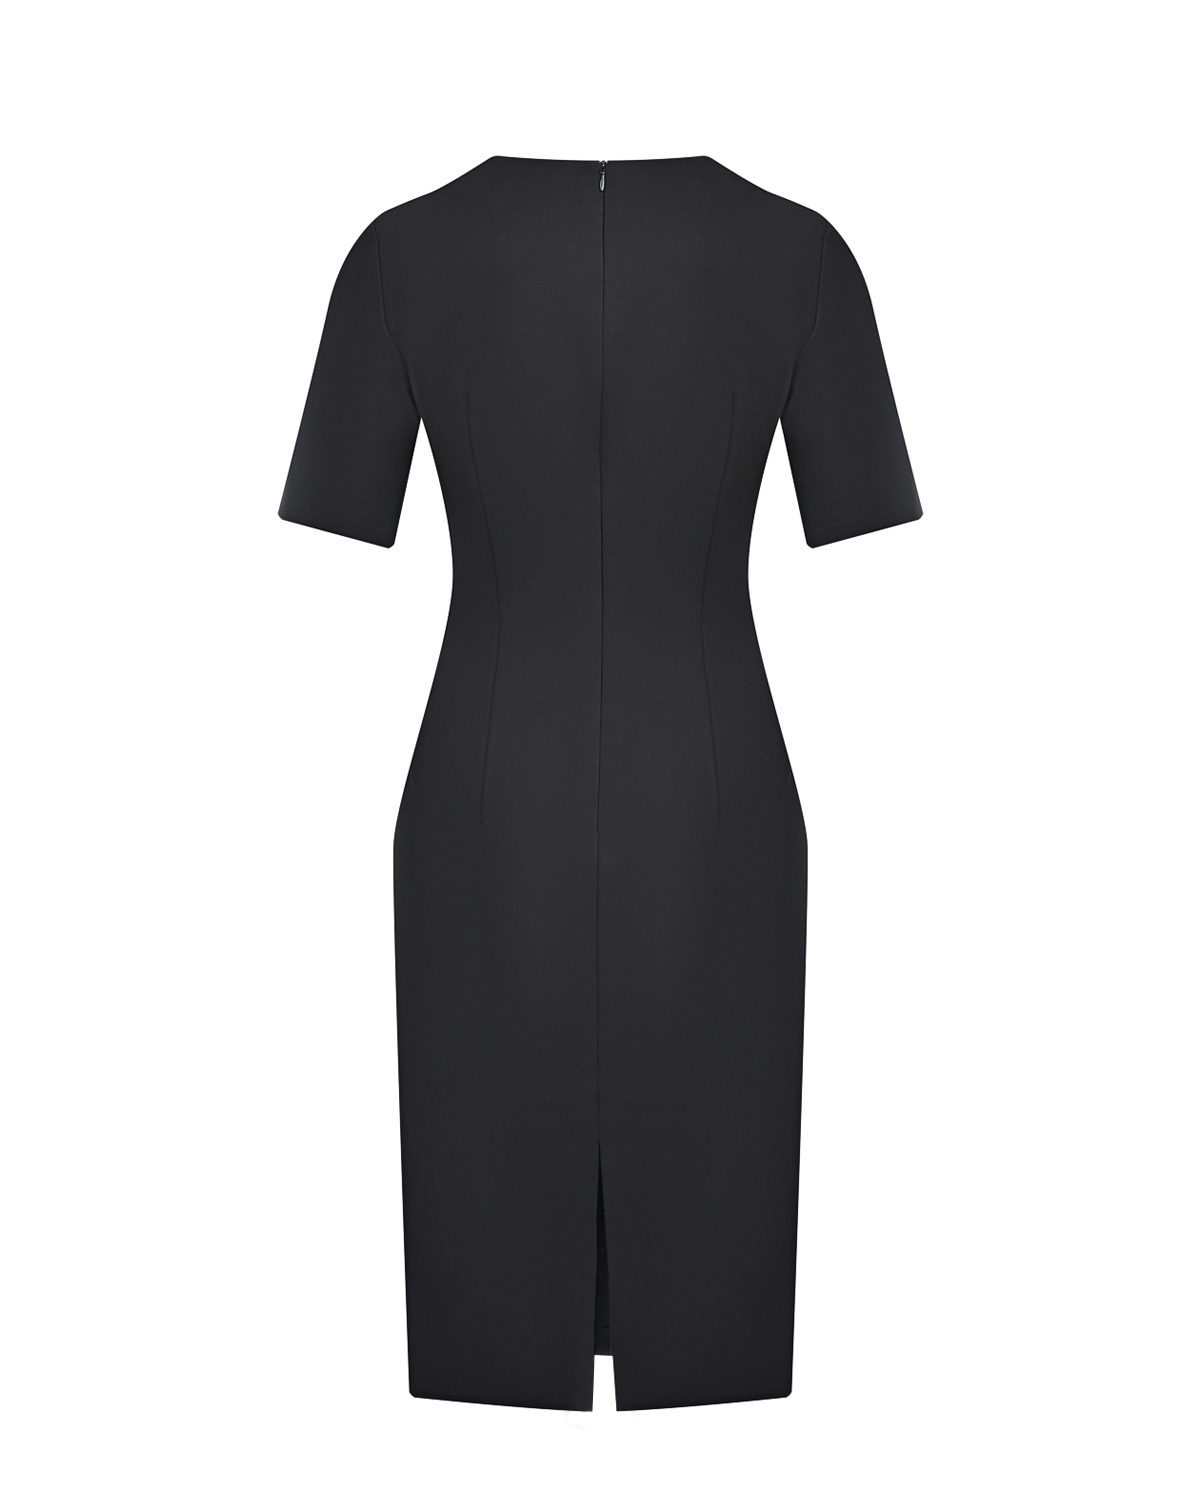 Трикотажное черное платье-футляр Dan Maralex, размер 42, цвет черный - фото 5